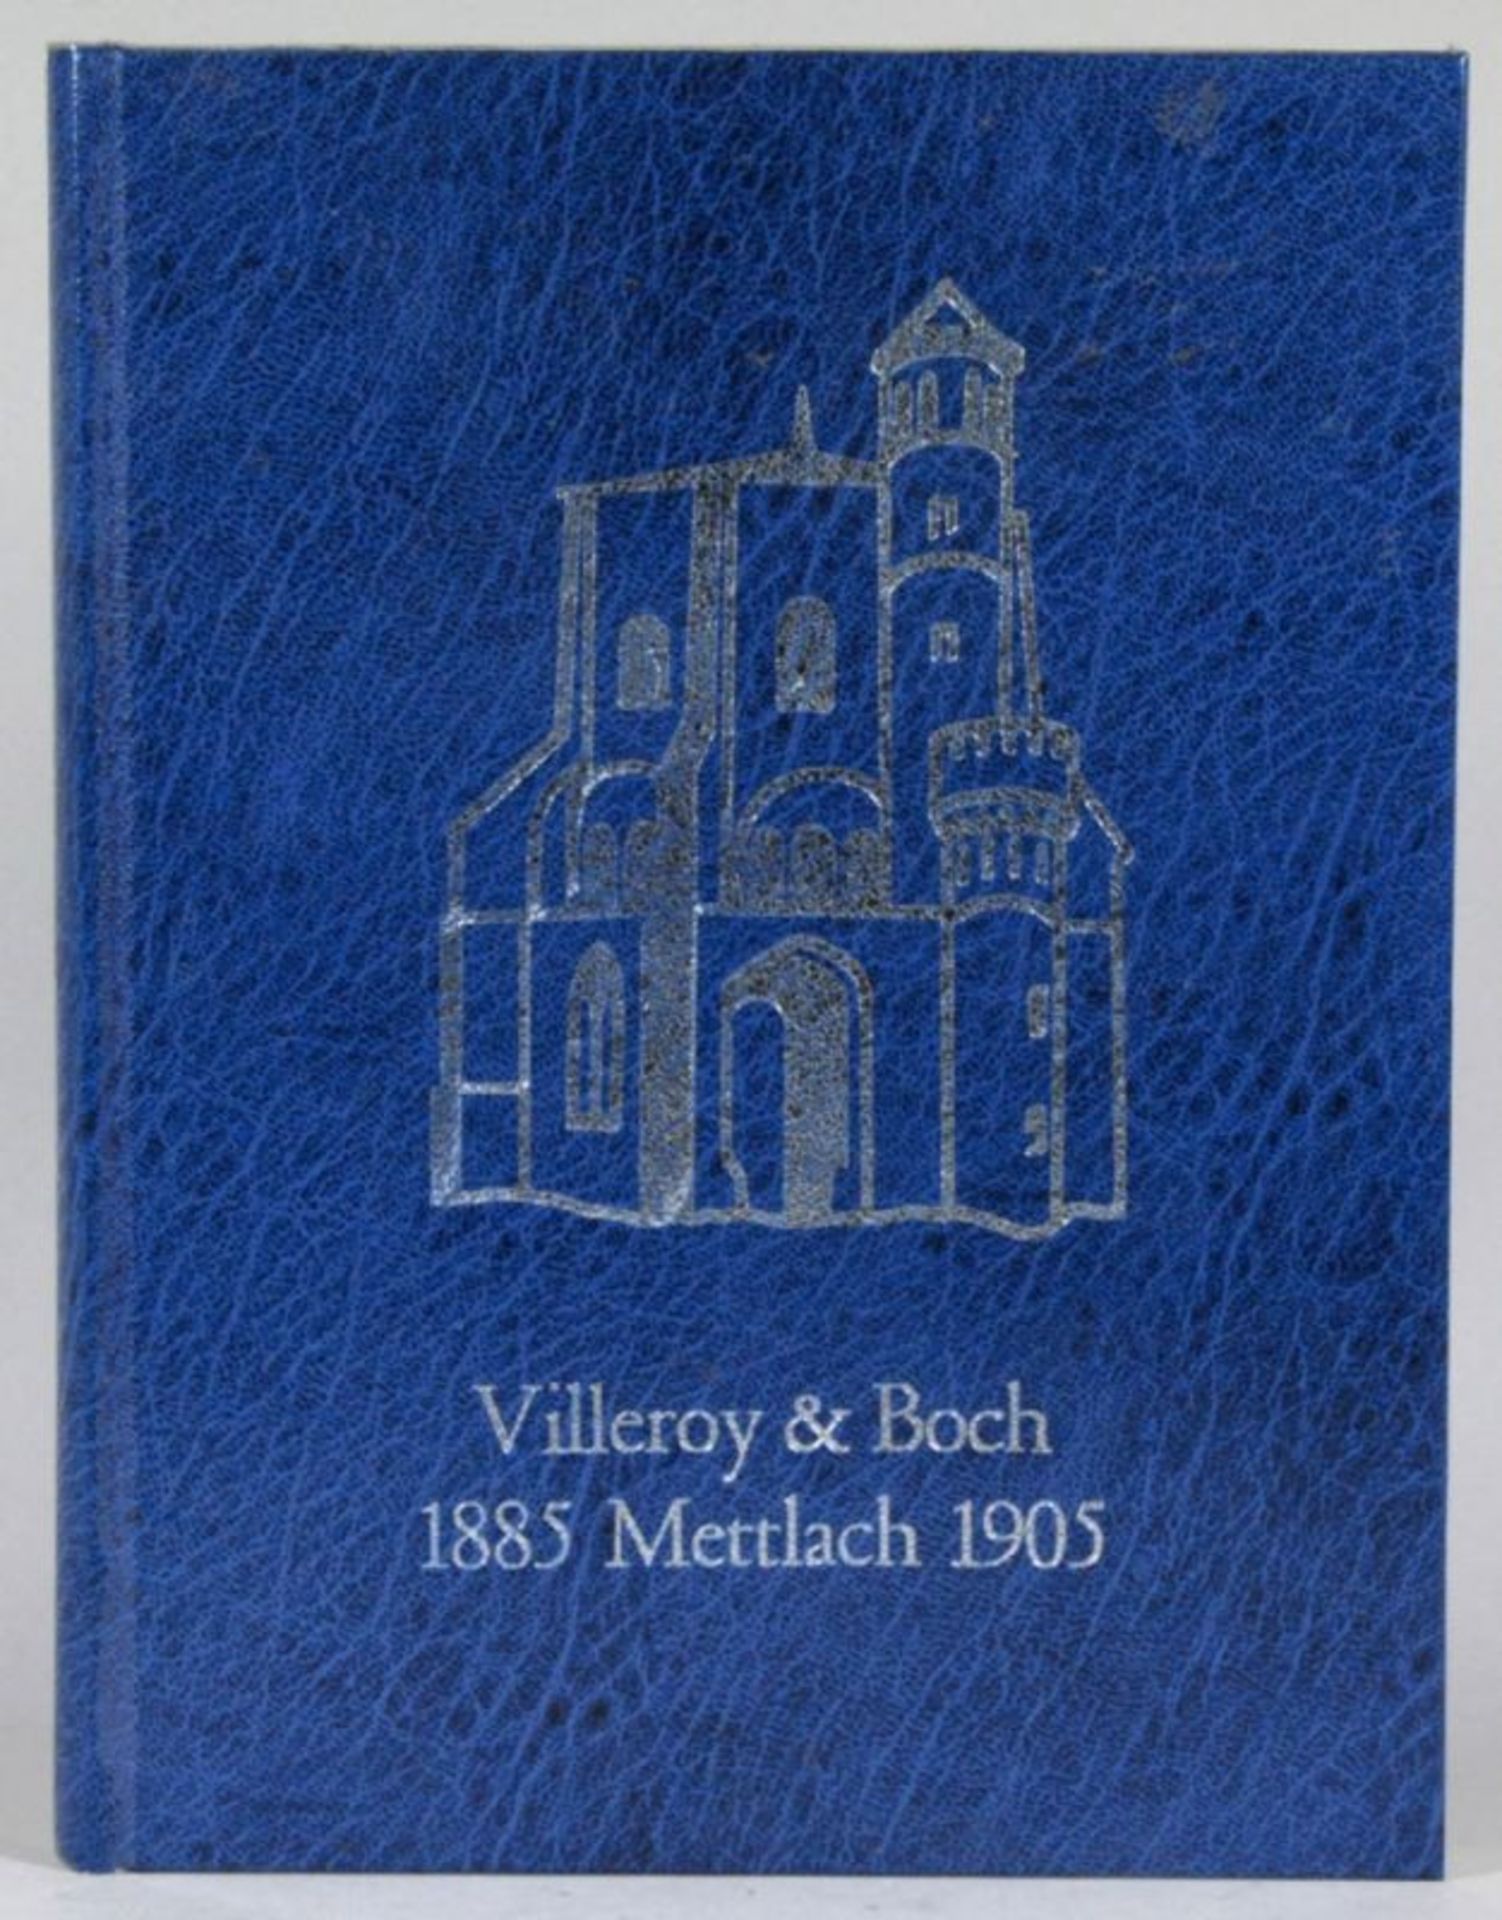 Buch, "Villeroy & Boch", 1885 Mettlach 1905, Anton Post, Saarwellingen, 1976, neuwertiger